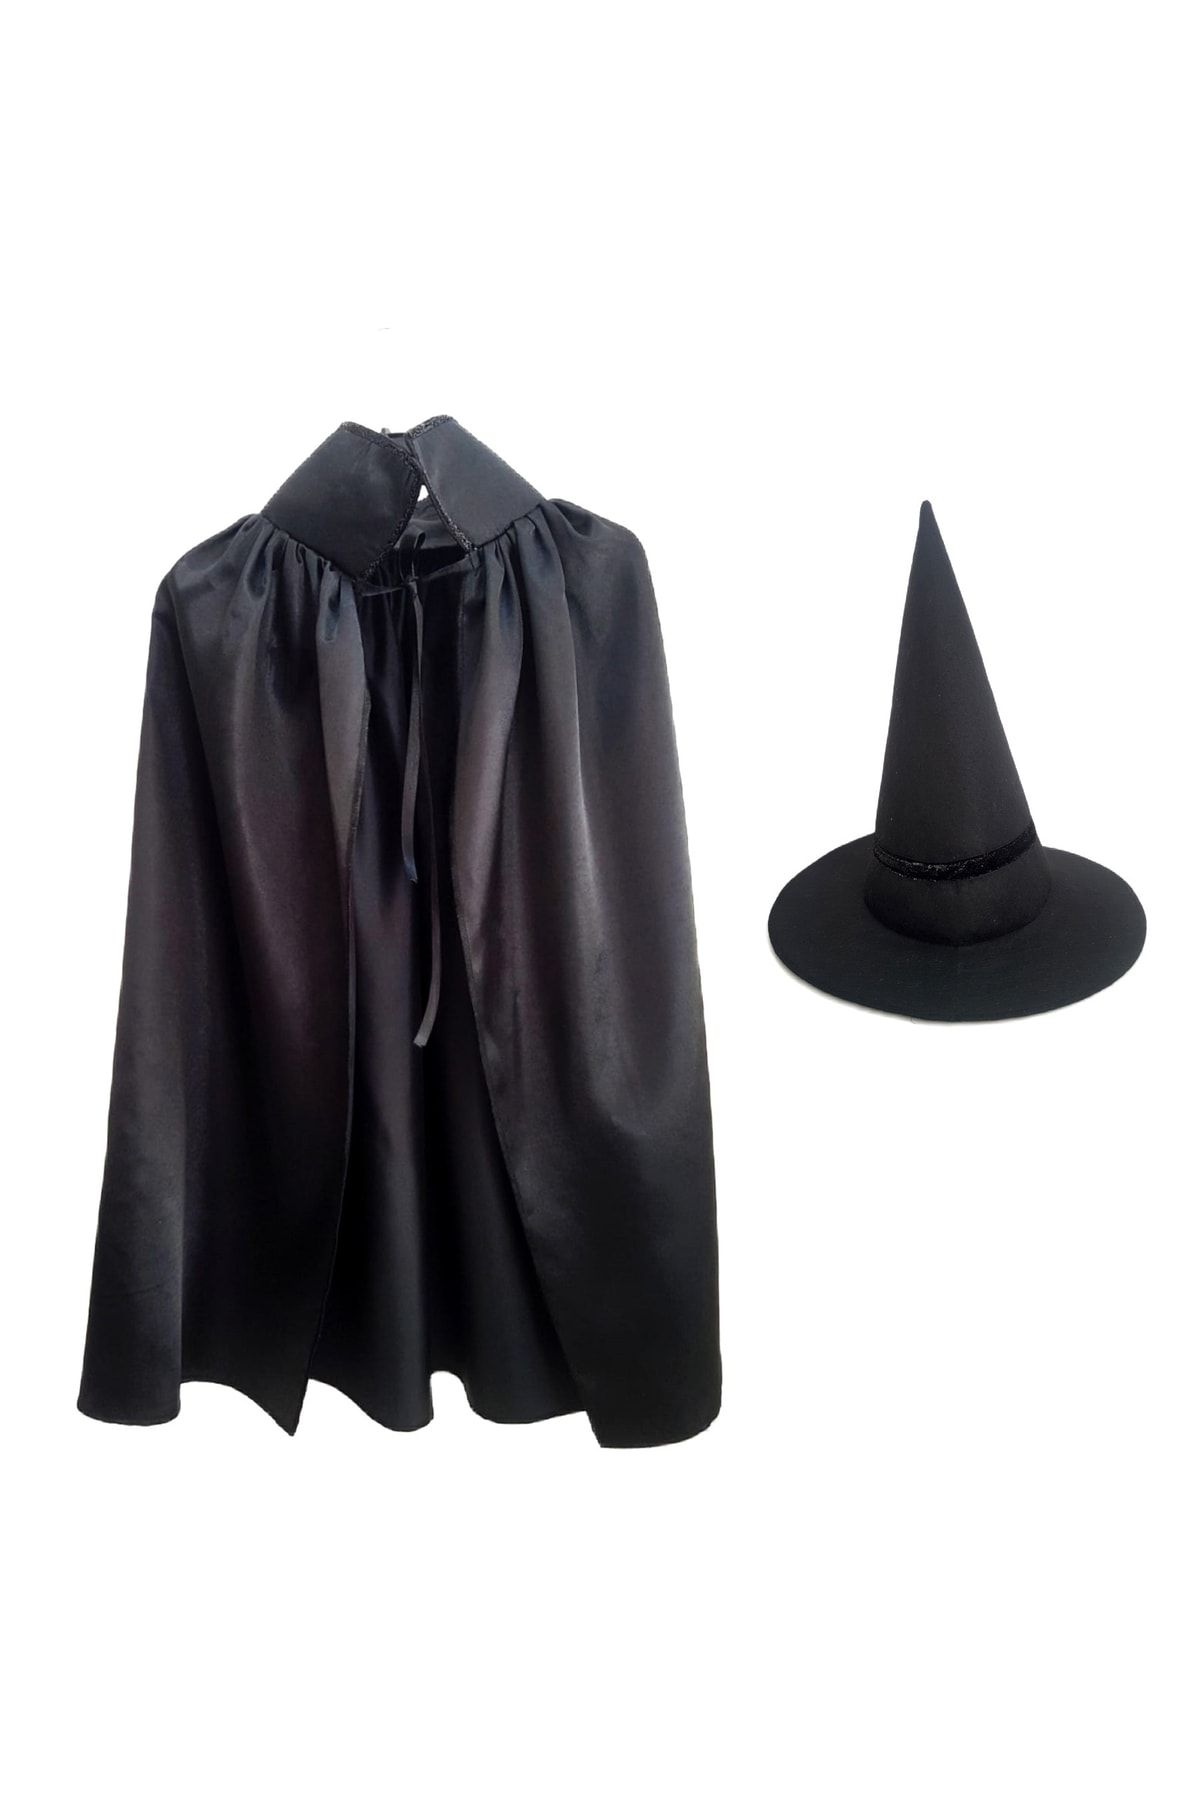 Gala Kostüm Hallowen Cadılar Bayramı Siyah Çocuk Cadı Şapkası Ve Pelerin (70CM) Set 4 - 9 Yaş